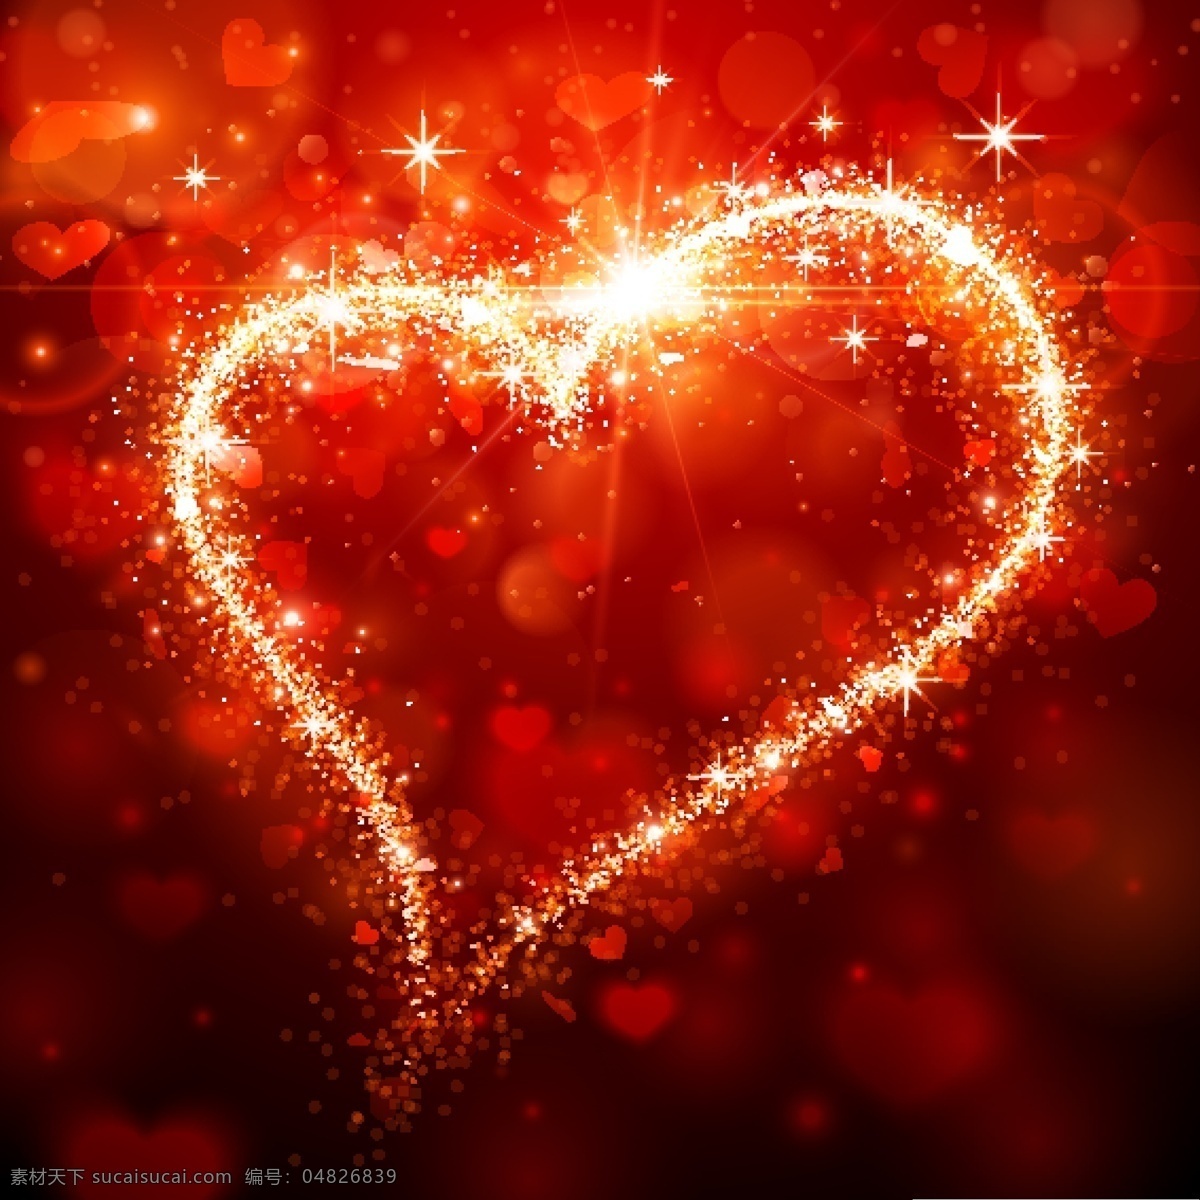 梦幻 光斑 心形 模板下载 爱心 红爱 214情人节 爱情 浪漫婚礼婚庆 节日素材 情人节 矢量素材